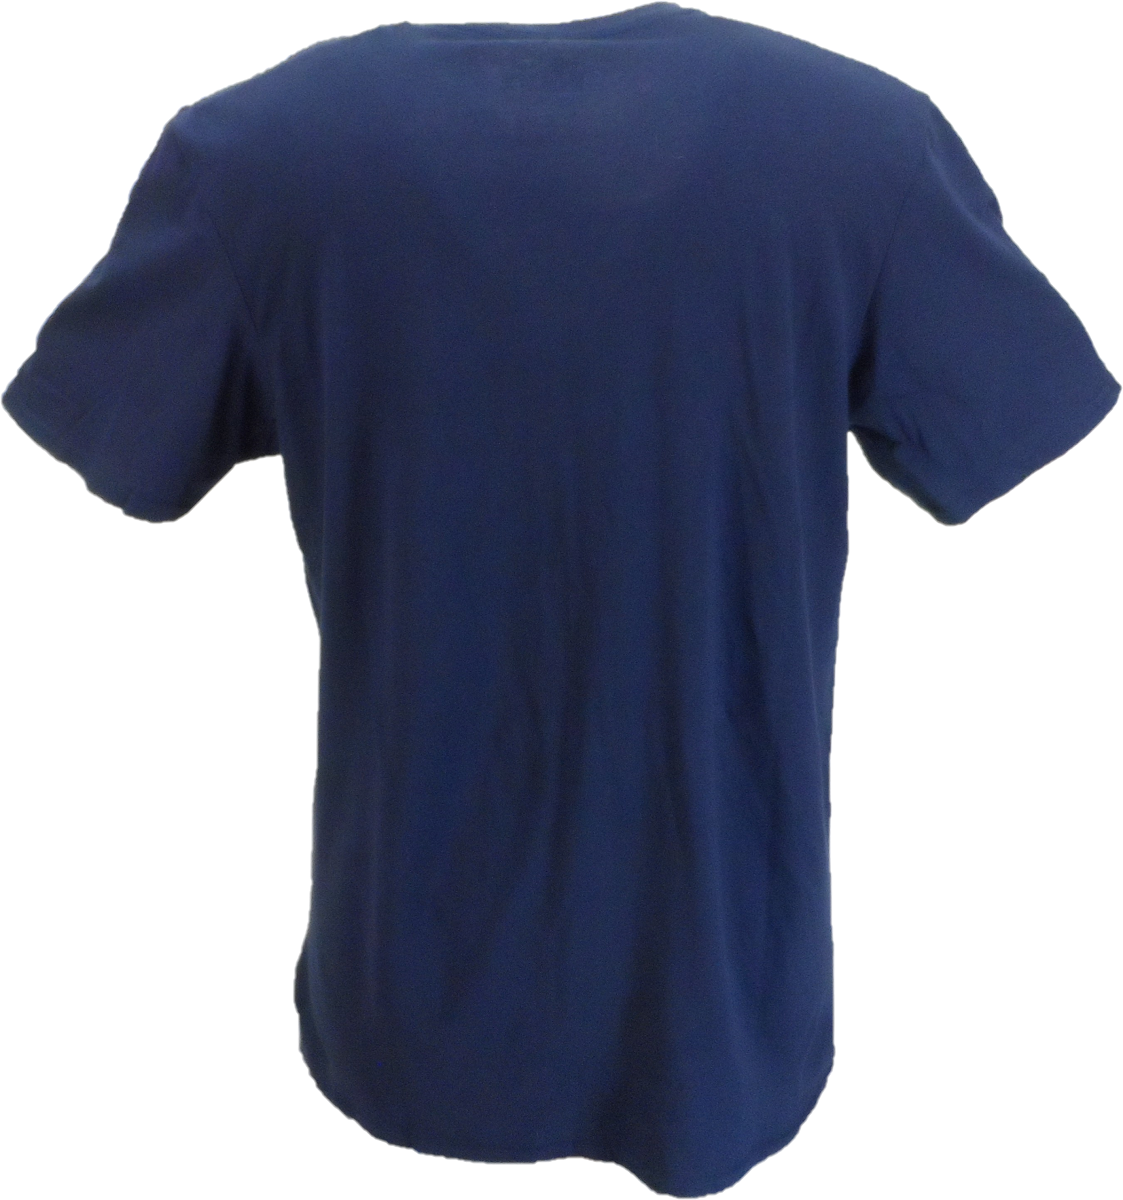 T-shirt officiel bleu marine pour hommes, le Message de la Police dans une bouteille